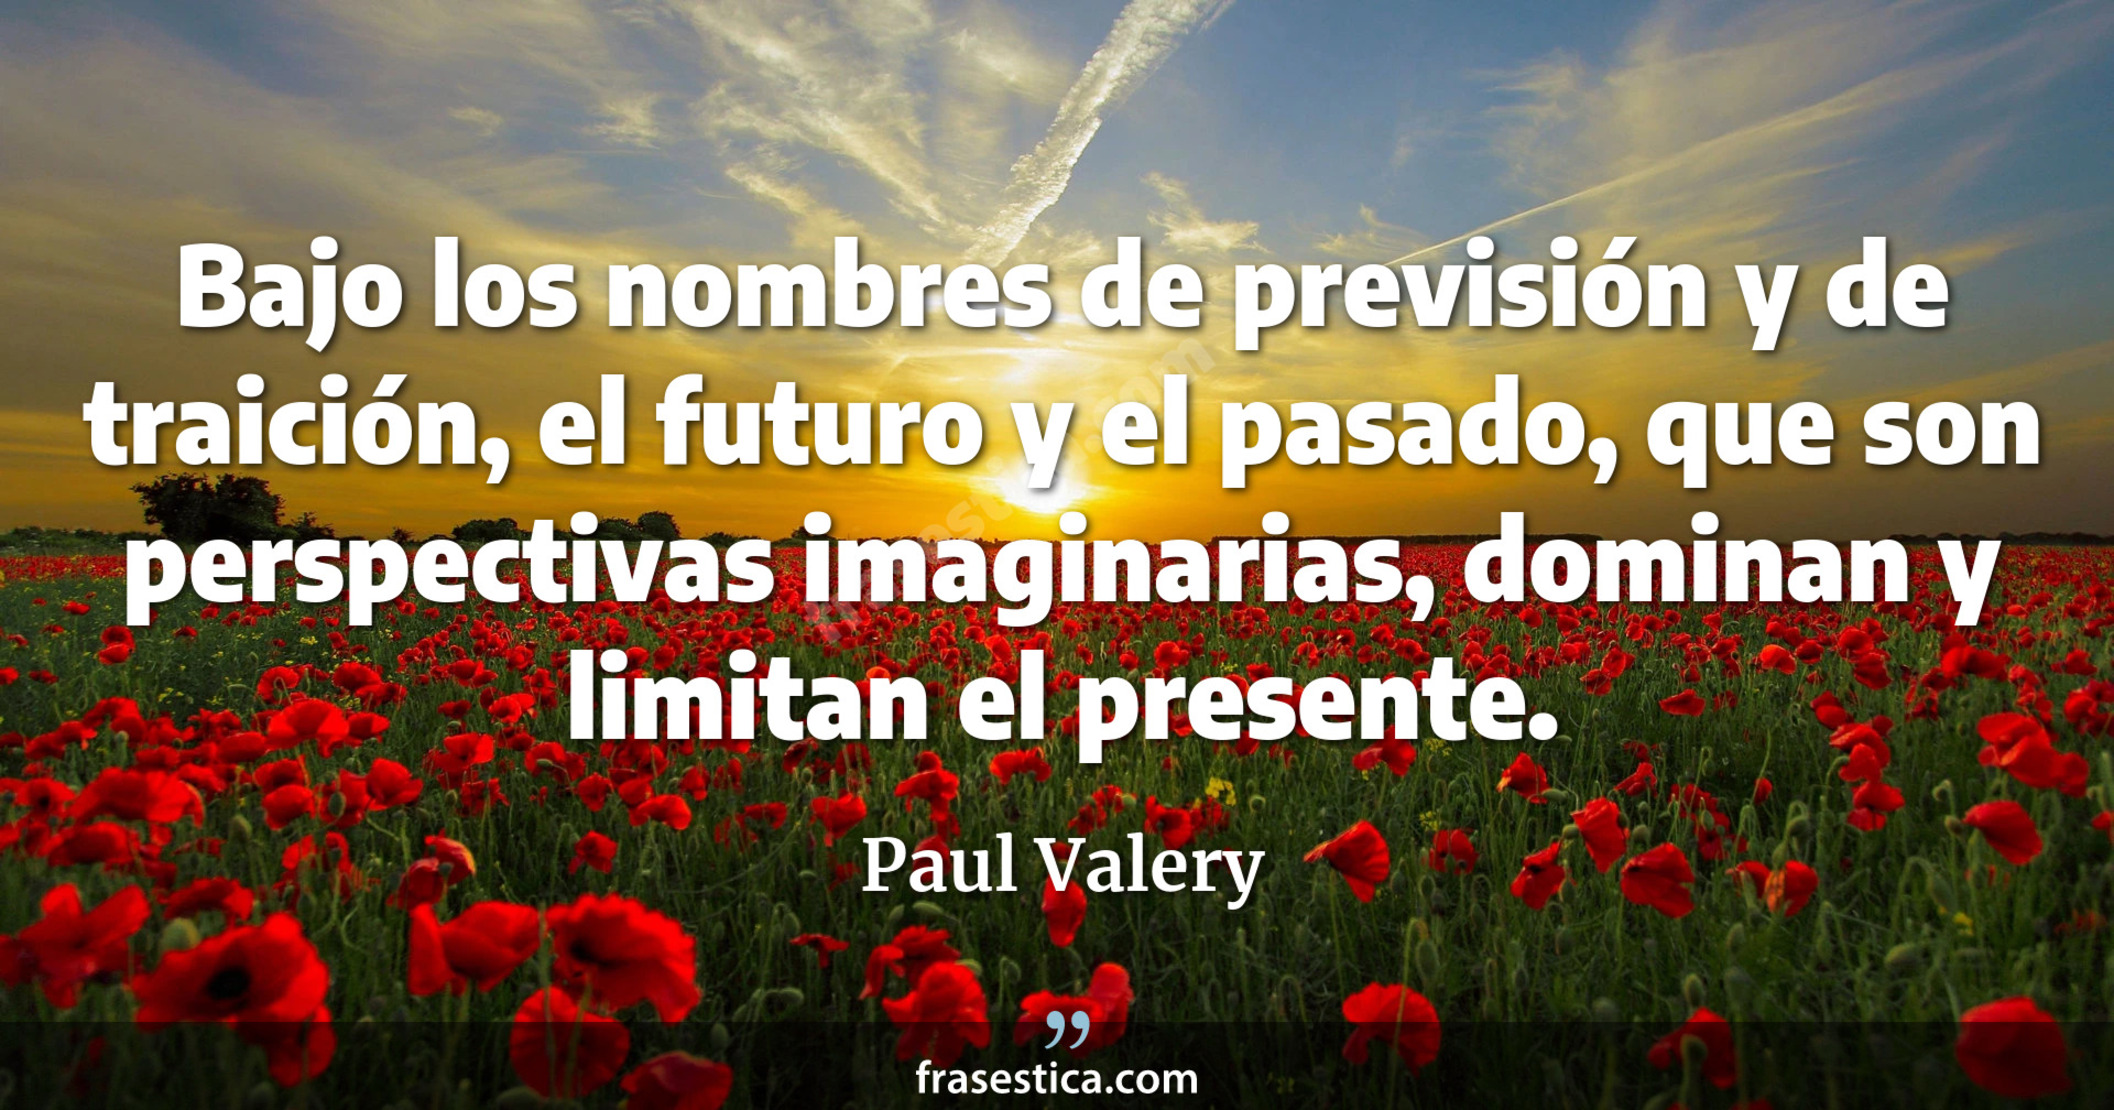 Bajo los nombres de previsión y de traición, el futuro y el pasado, que son perspectivas imaginarias, dominan y limitan el presente. - Paul Valery